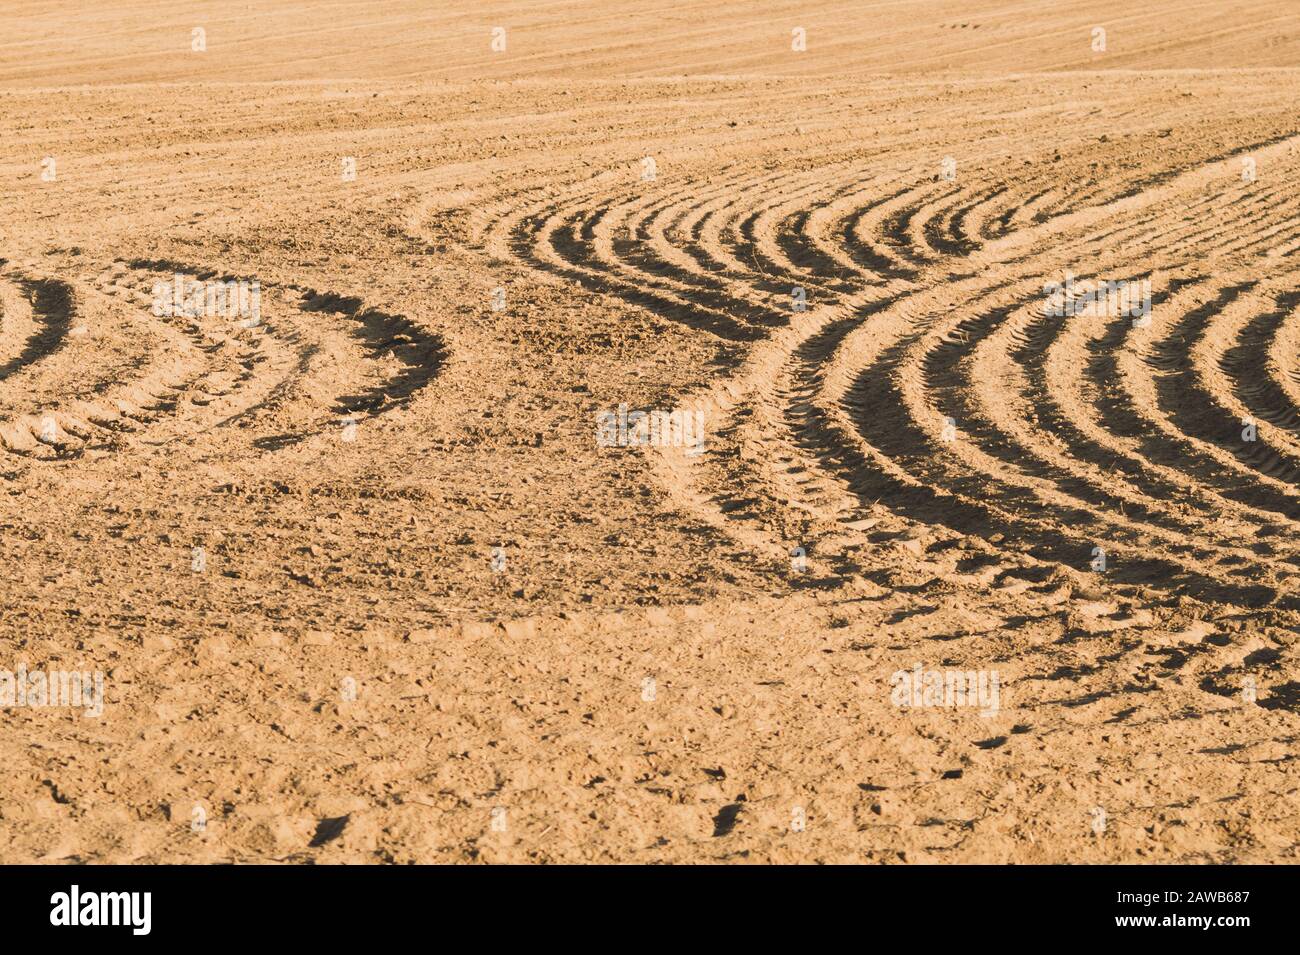 Muster von gebogenen Graten und Furchen auf einem sandigen Feld. Spuren auf dem Sand. Traktorbahnen Stockfoto